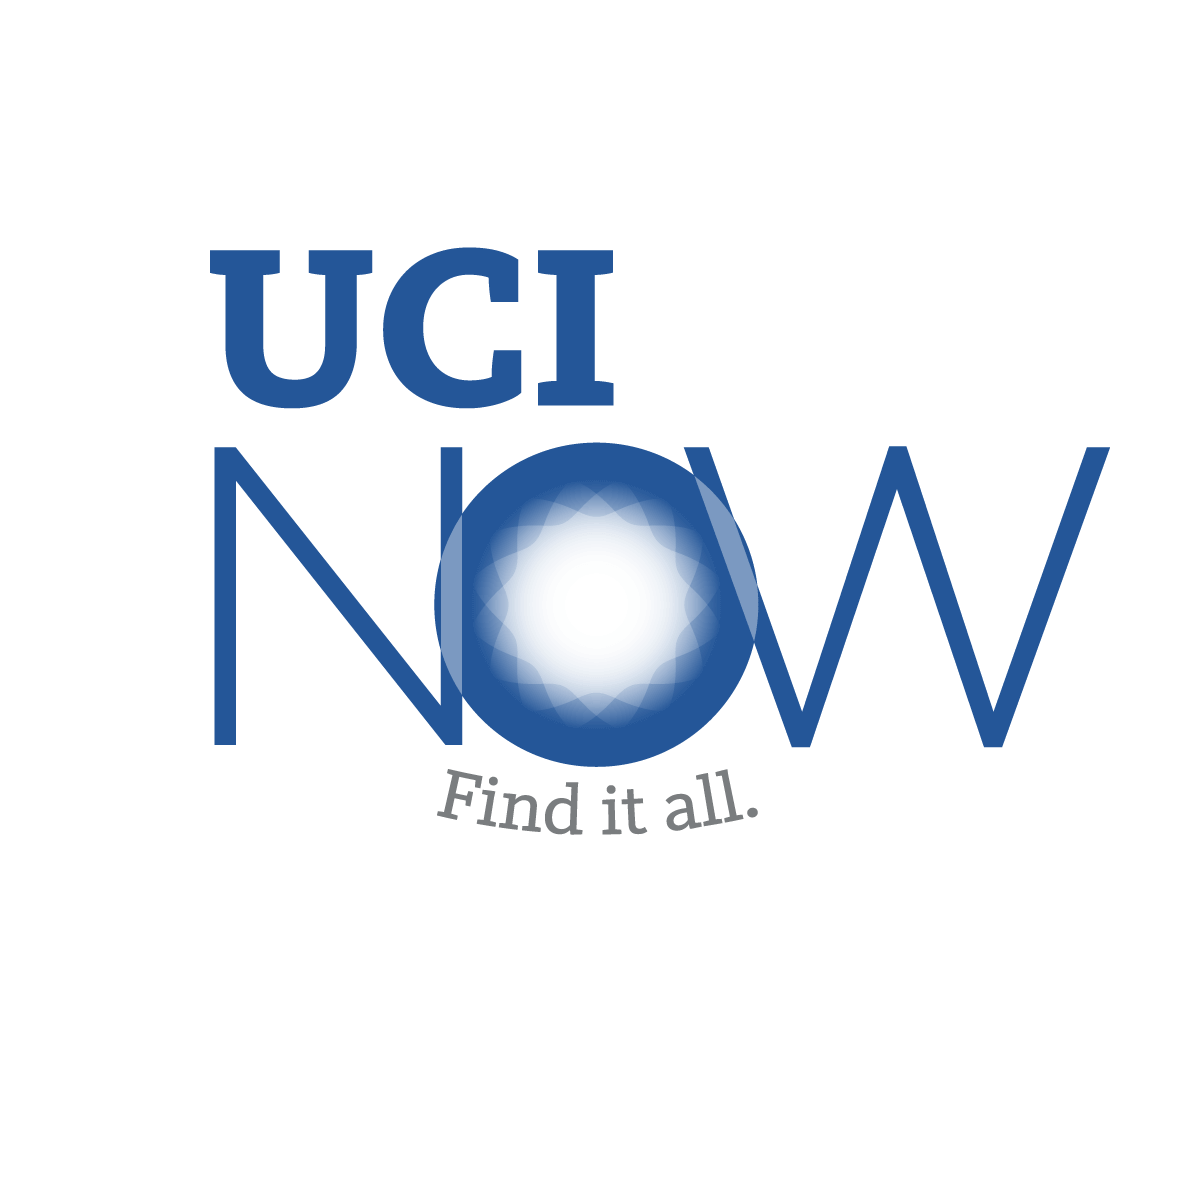 UCI Now